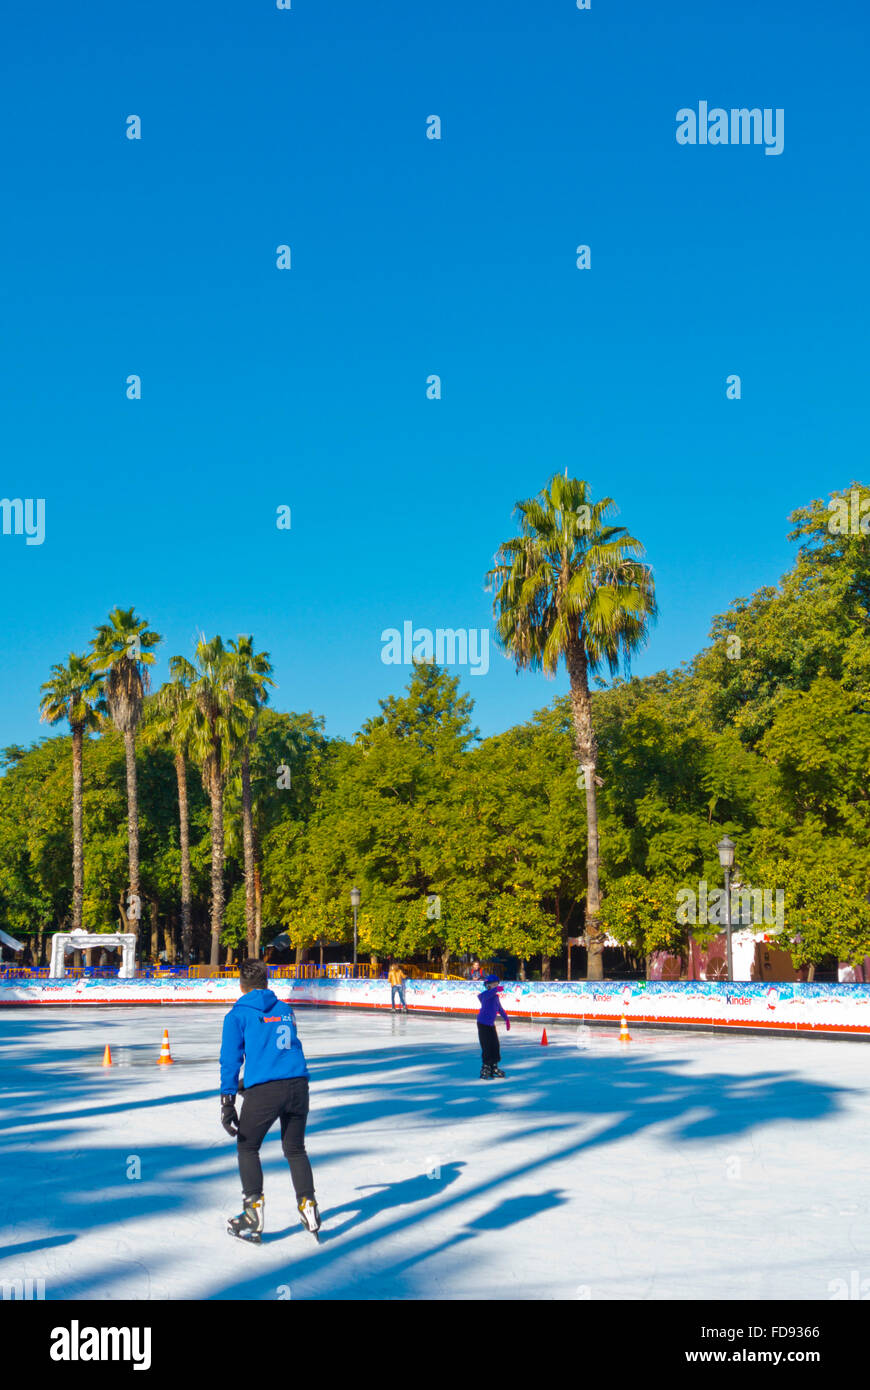 Pista de patinaje sobre hielo, el Prado de San Sebastián, Parque, Sevilla,  Andalucía, España Fotografía de stock - Alamy